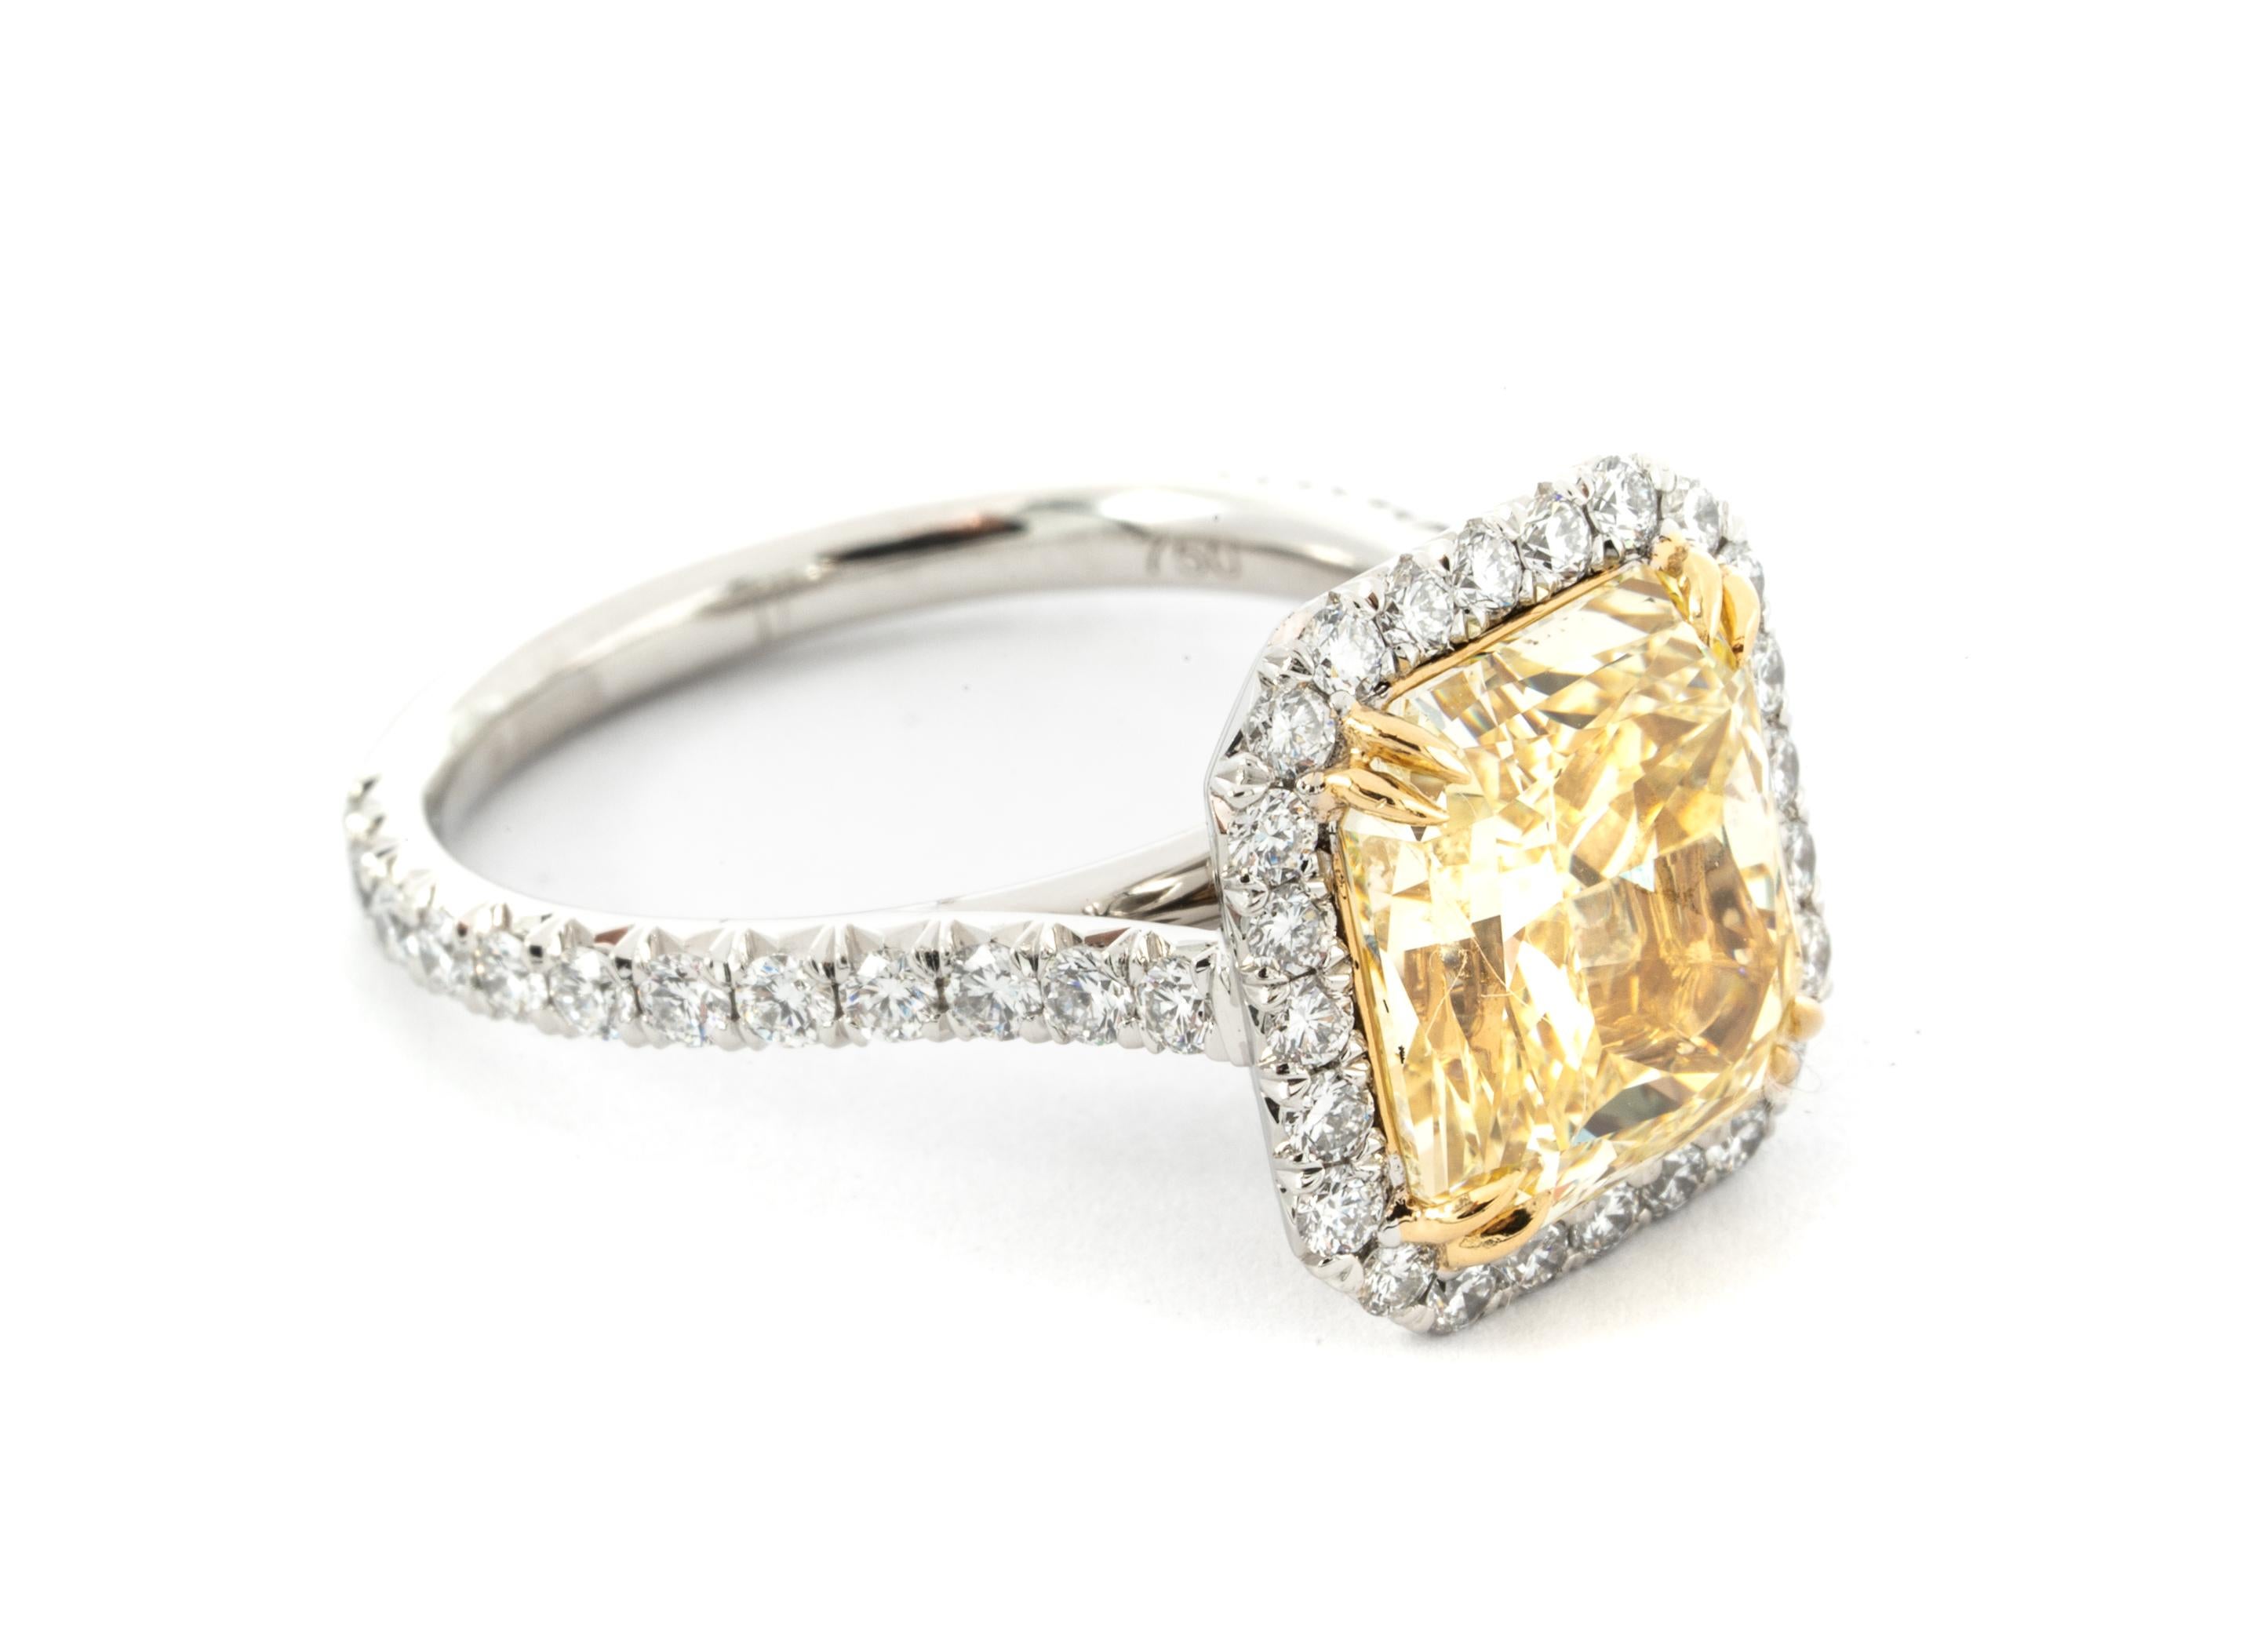 4,68 Karat Fancy Yellow Diamantring mit Strahlenschliff
GIA Grading Bericht enthalten ( # 15321851 ) 
Ring ist hervorgehoben mit  48 runde Diamanten mit einem Gesamtgewicht von 0,87 Karat, Farbe G, Reinheit Vs  
Zusammenfassung:
Zentrum: .4.68 Ct